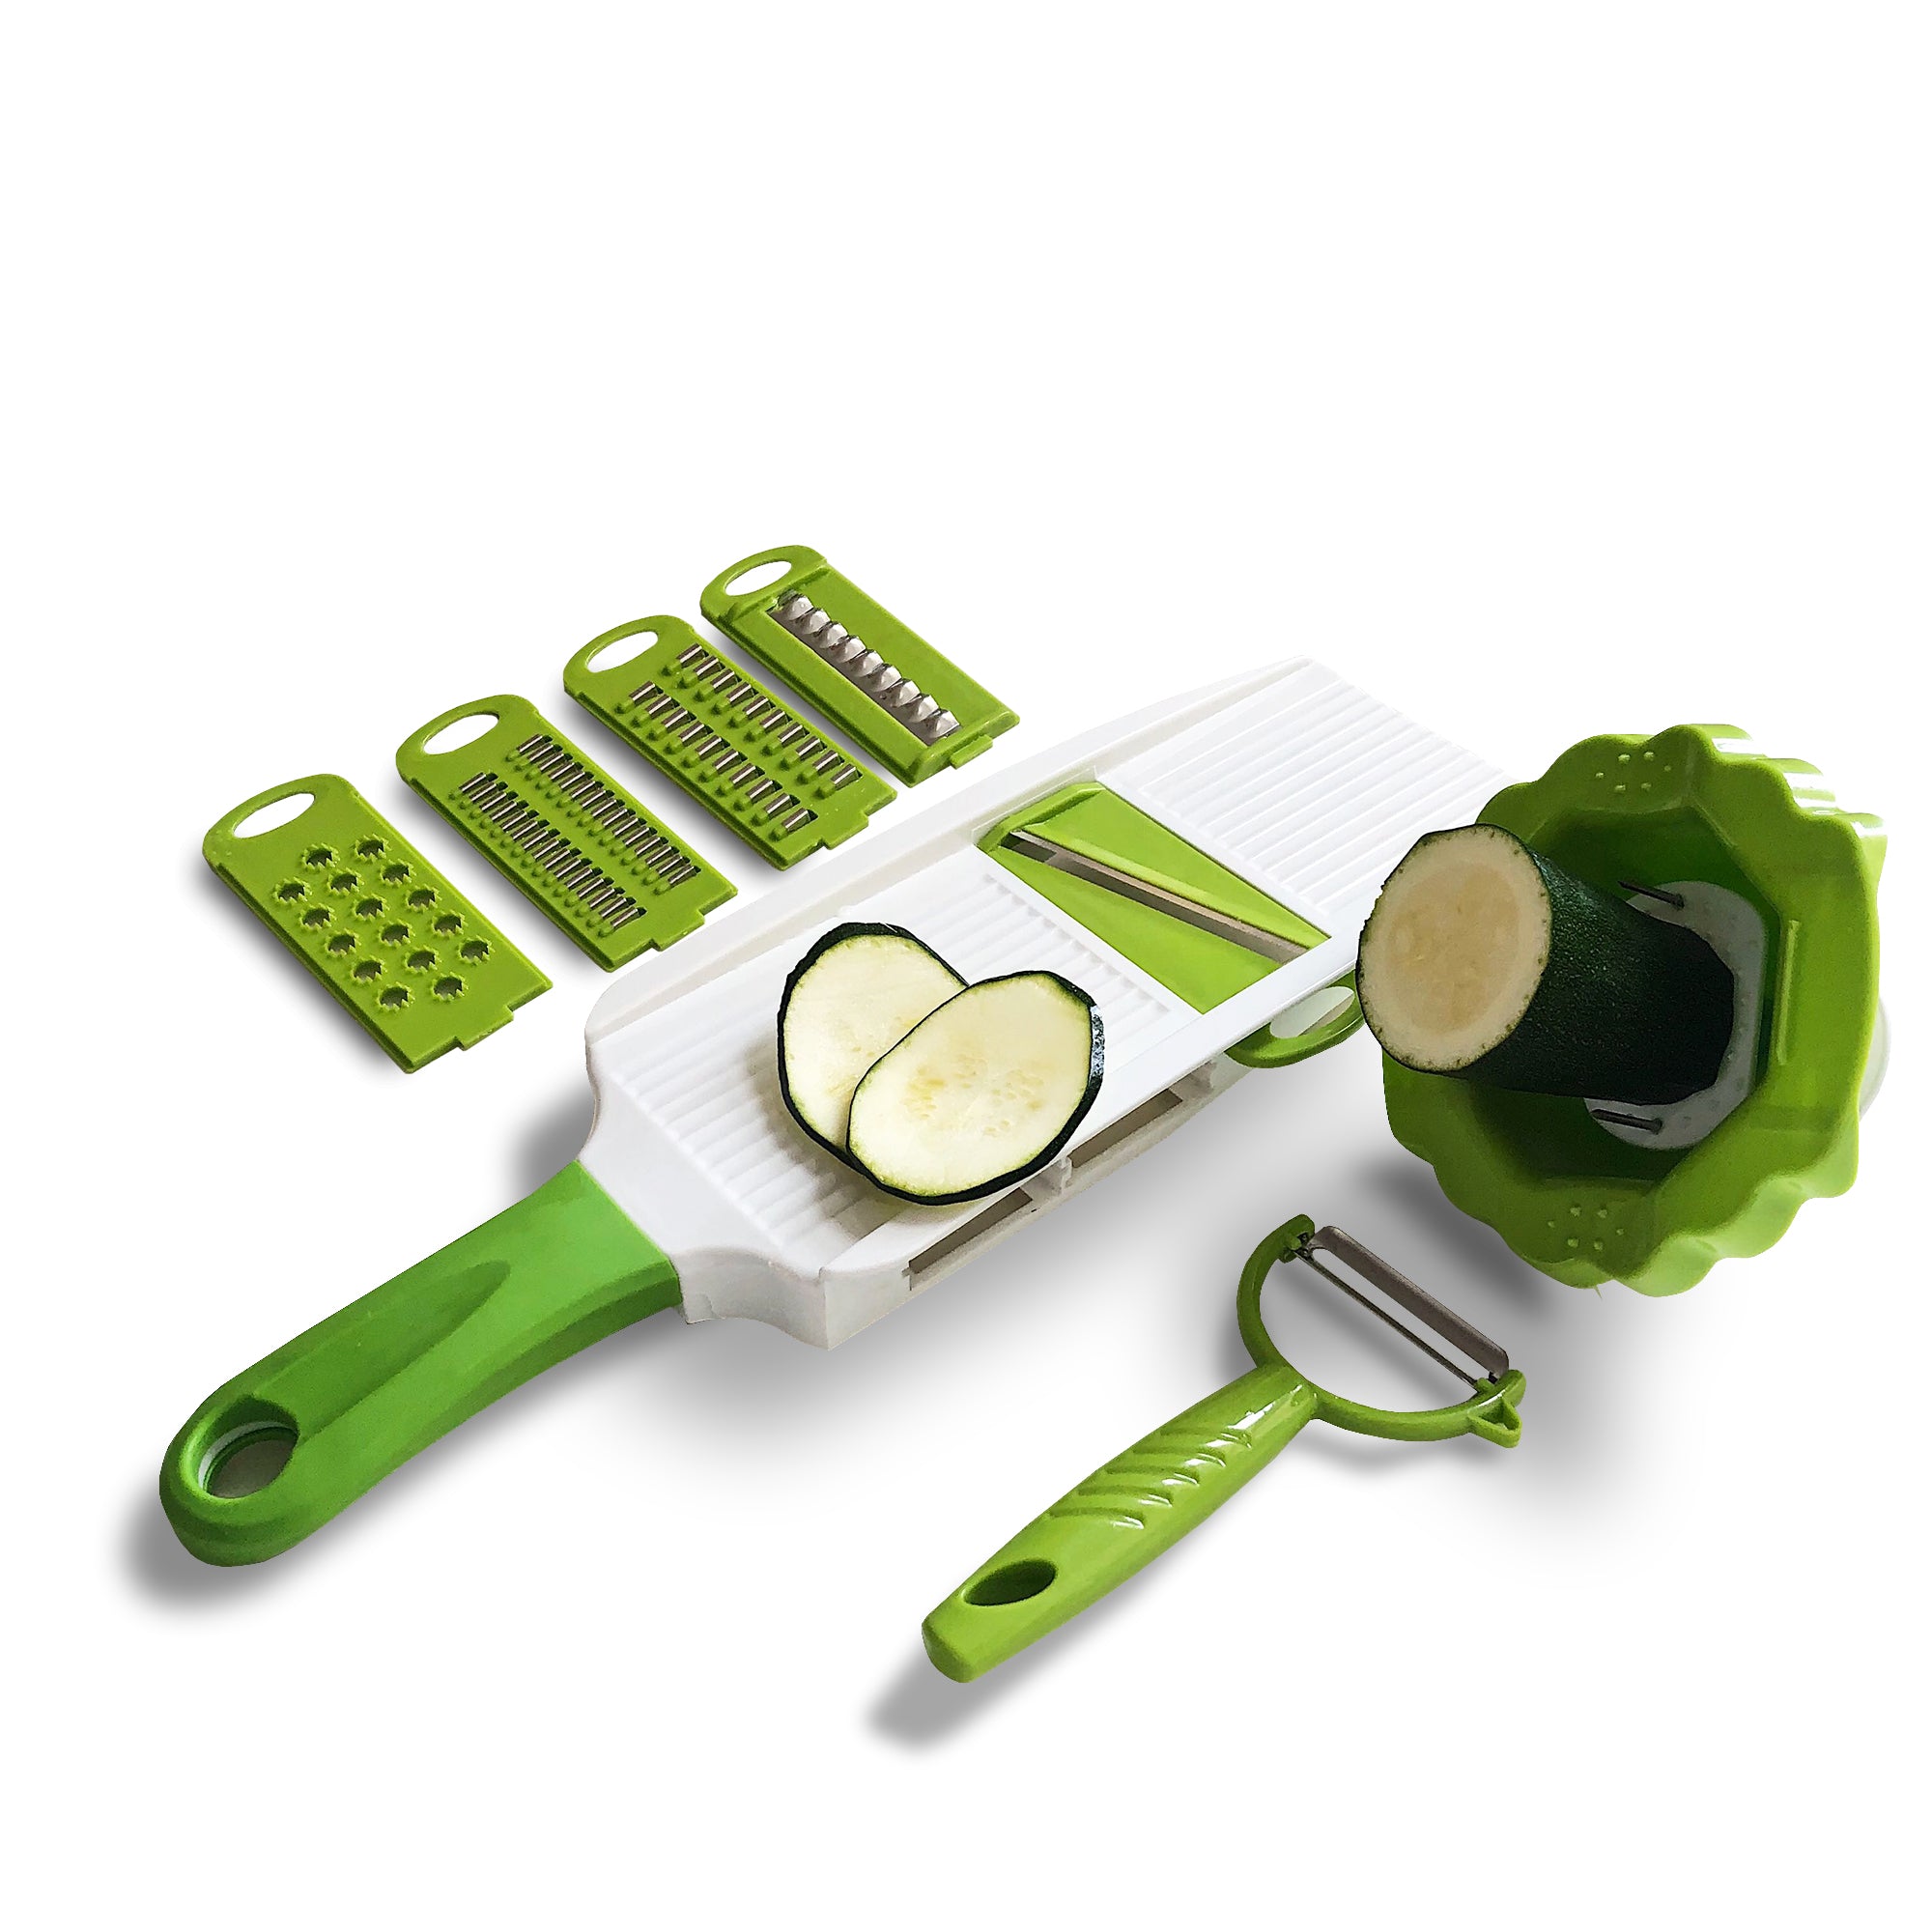 Handheld Kitchenware Fruit & Vegetable Slicer - Kitchenfiy